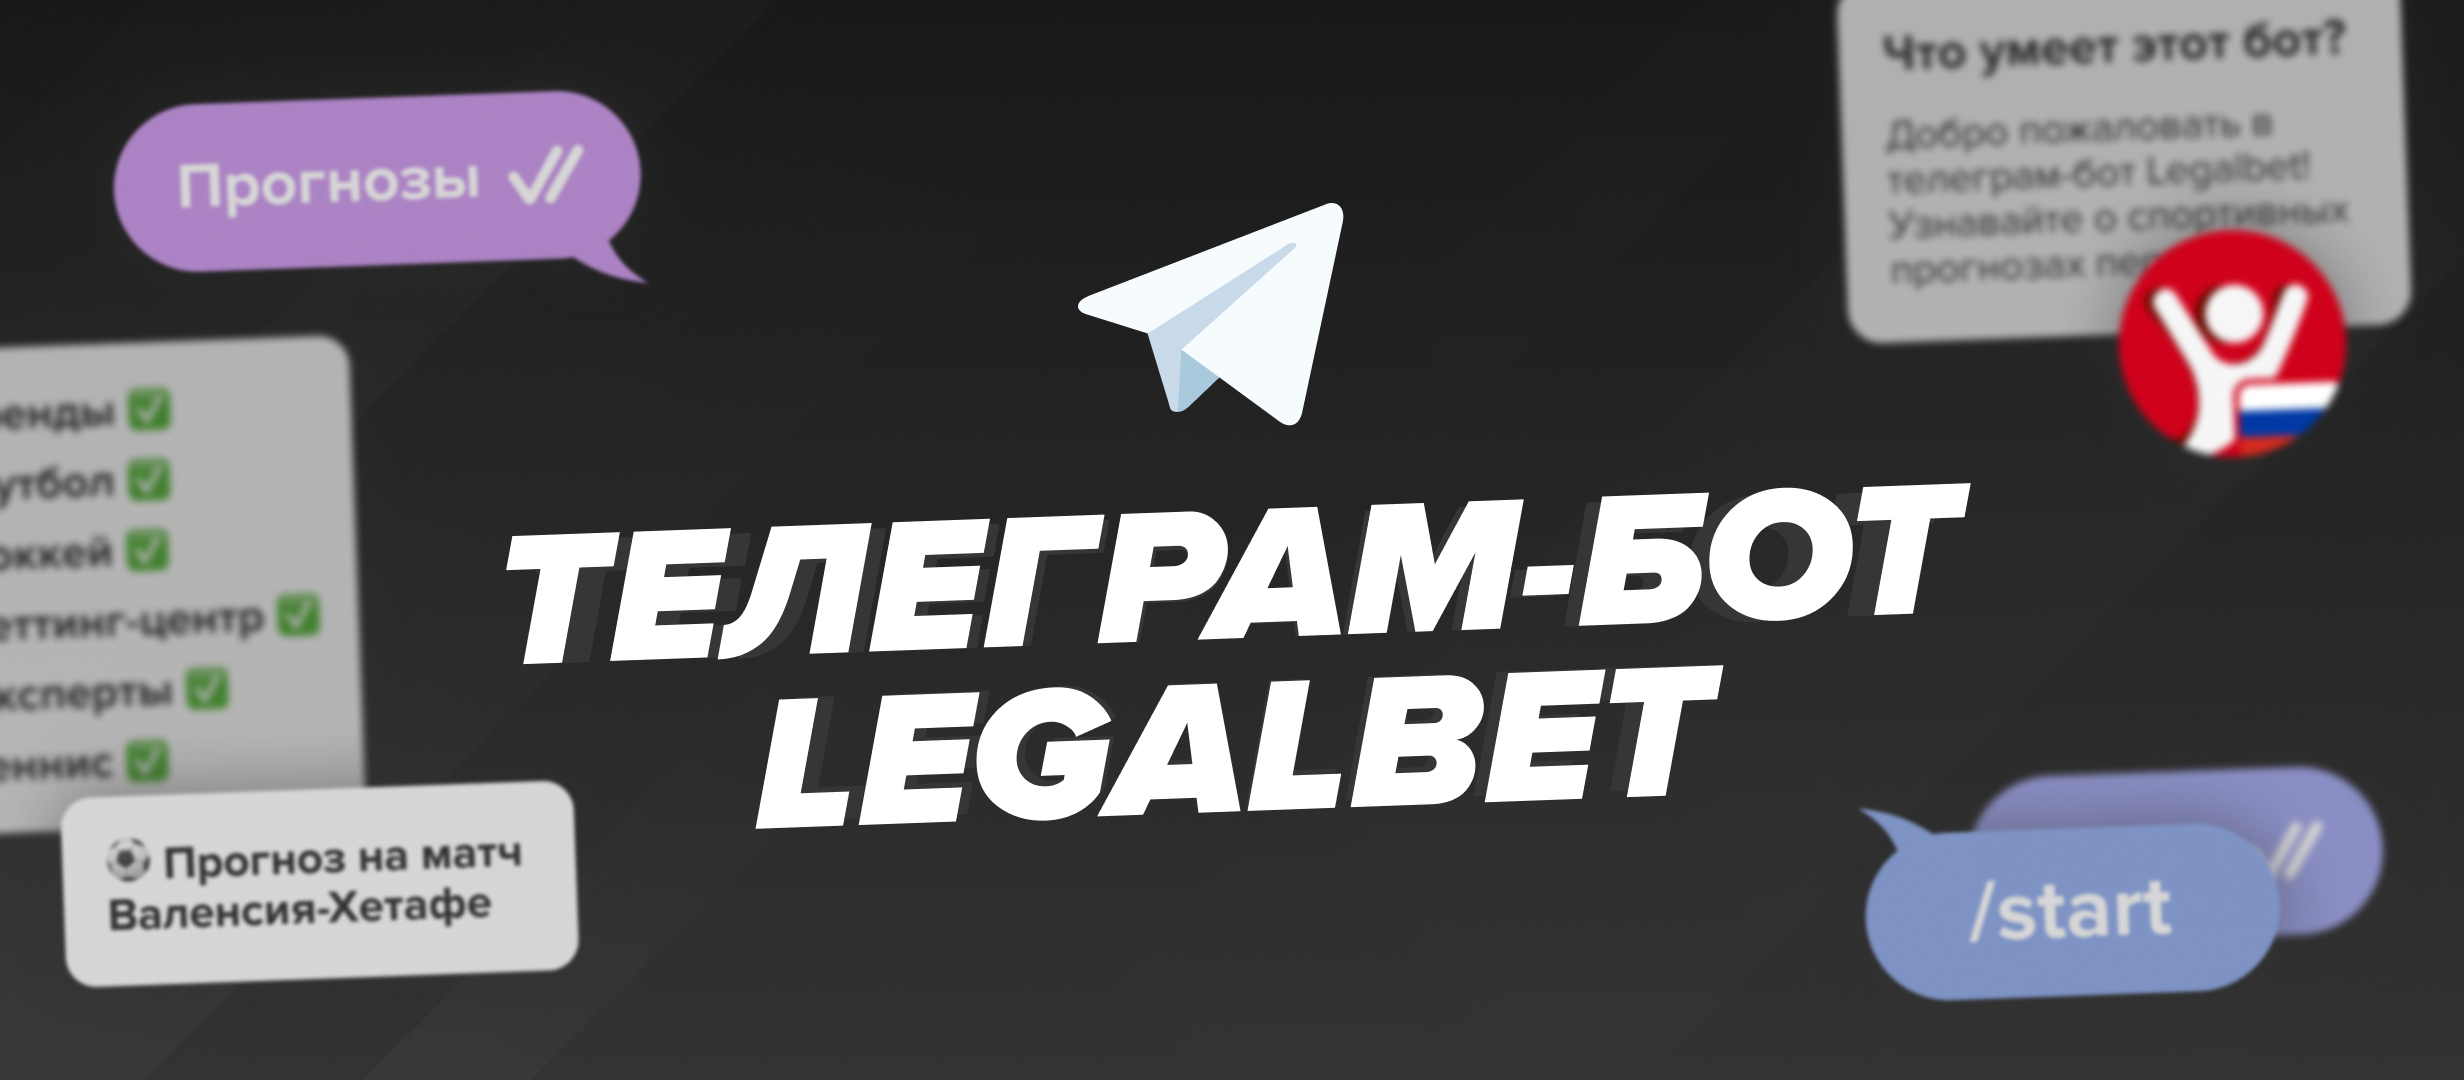 Новинка от Legalbet: мгновенные оповещения от телеграм-бота